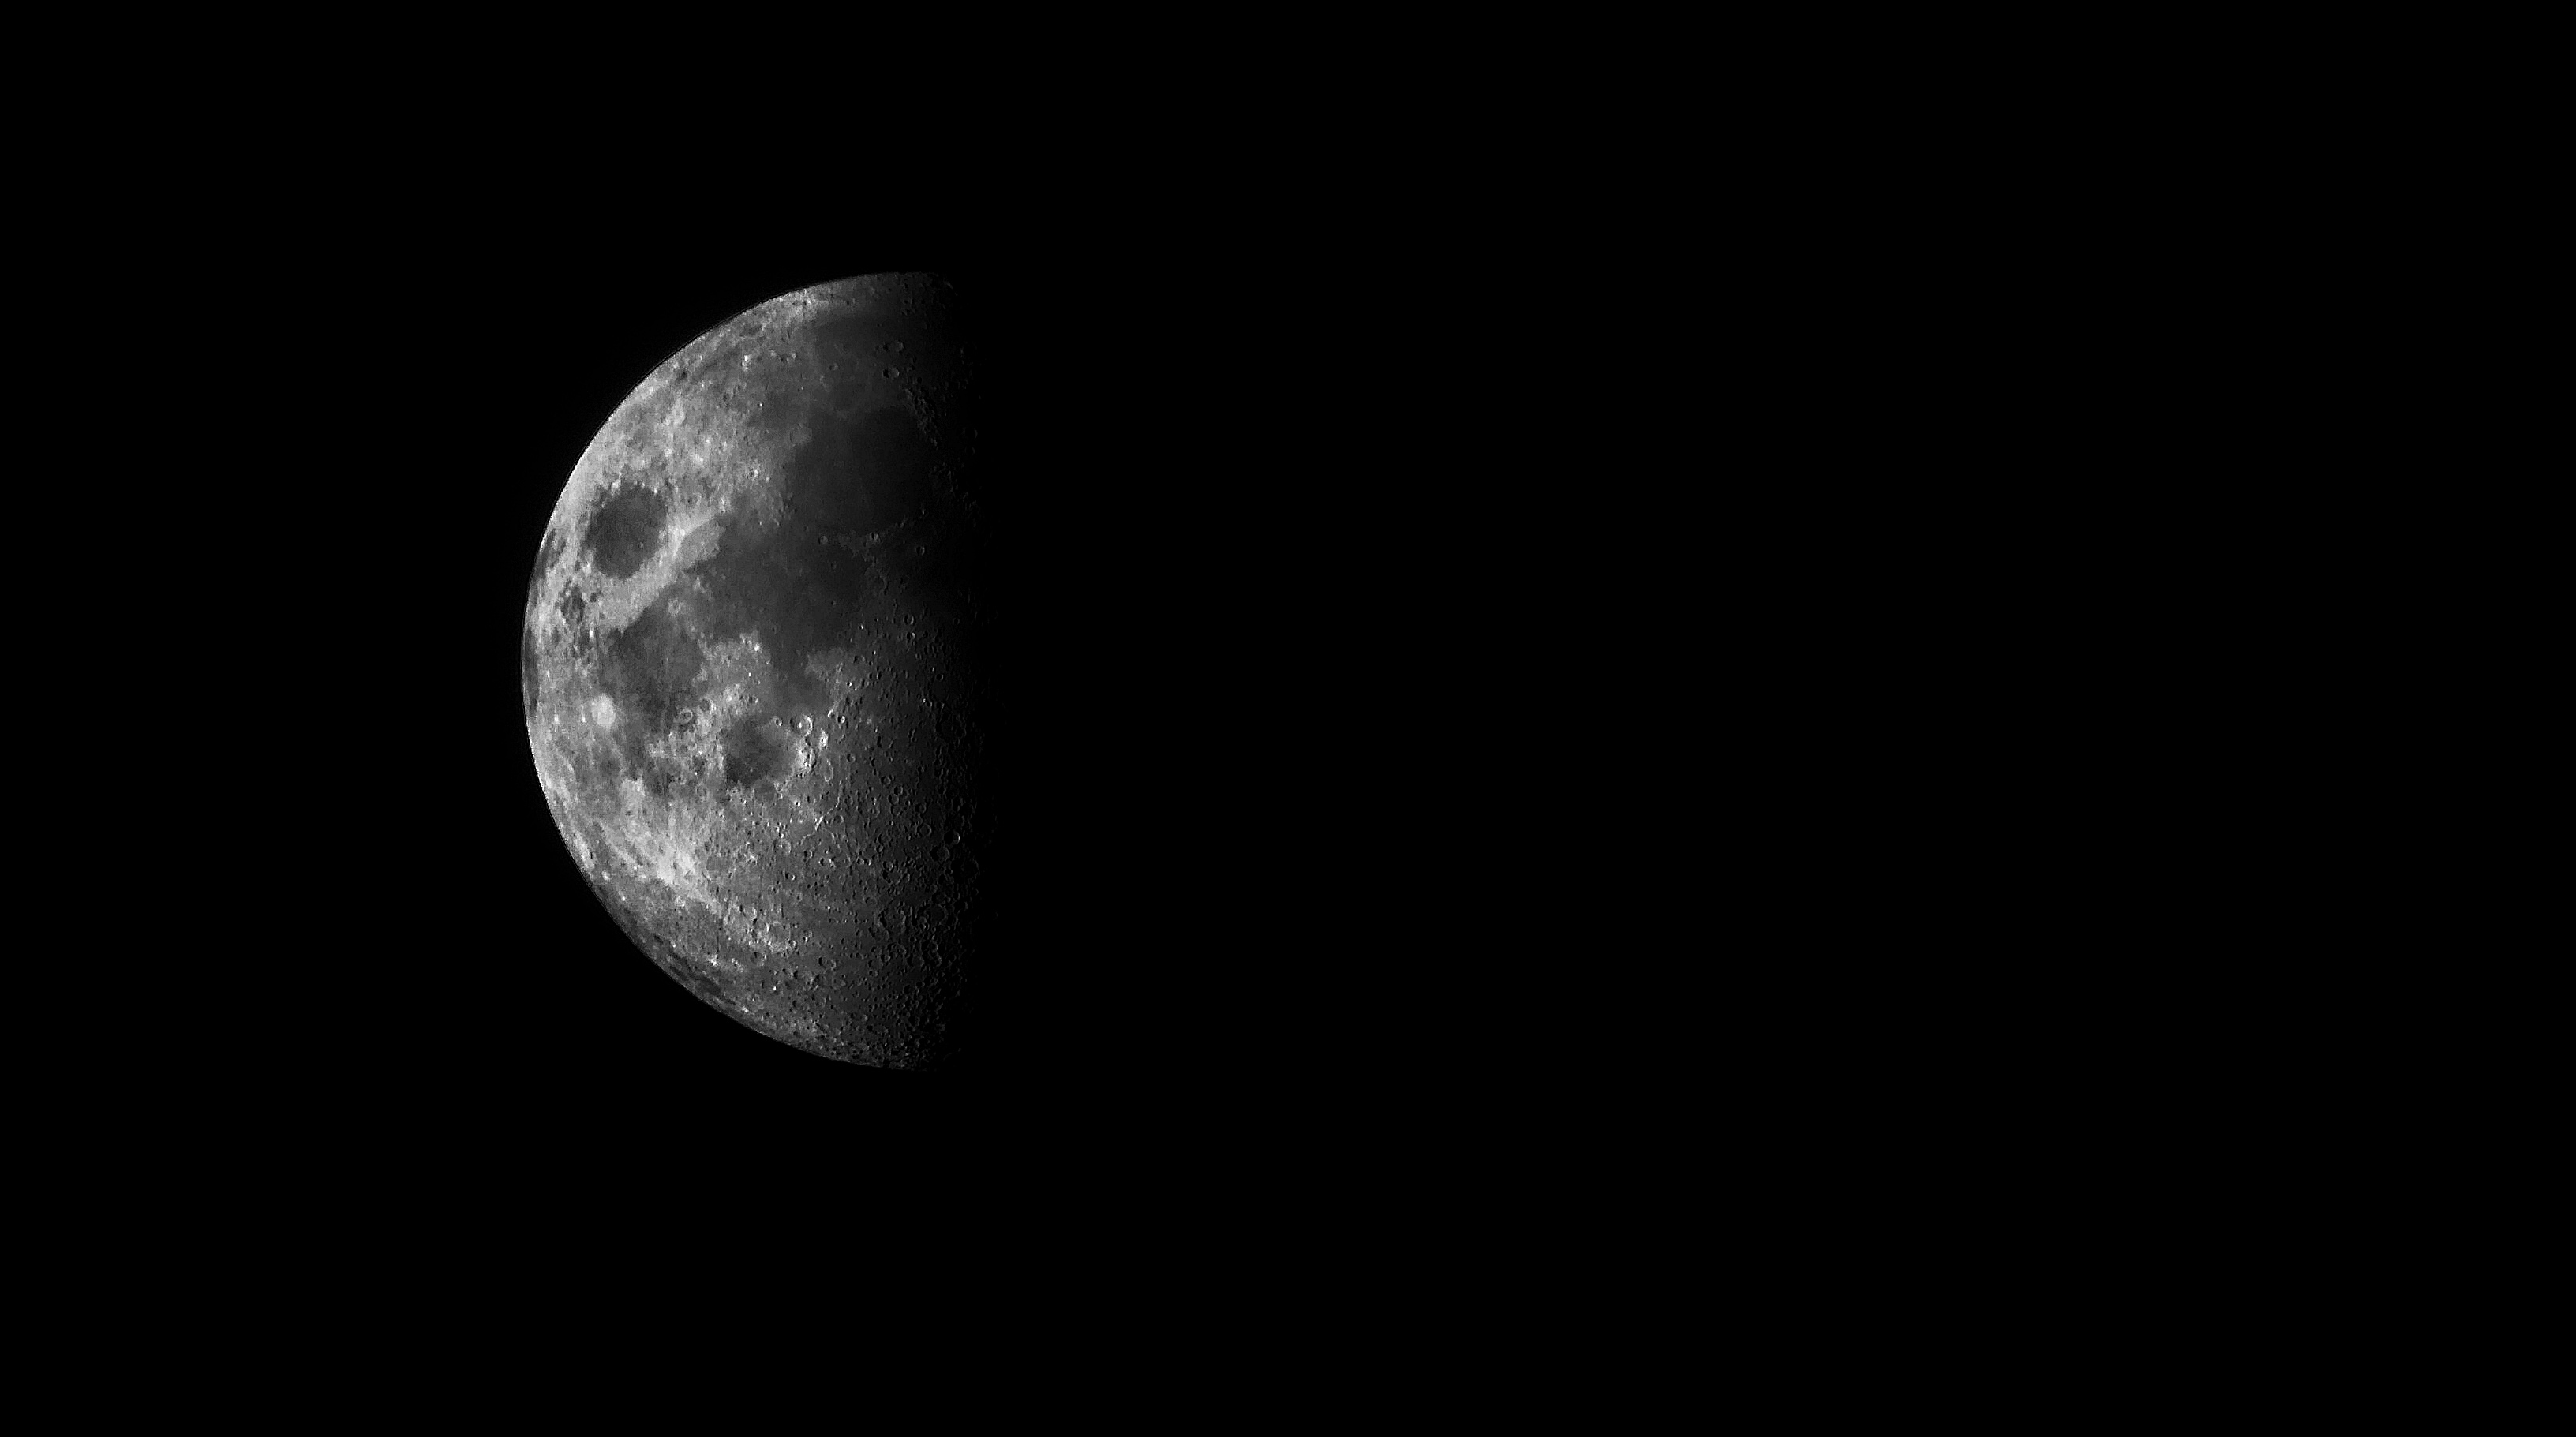 Fekete-fehér, közeli fénykép a holdról